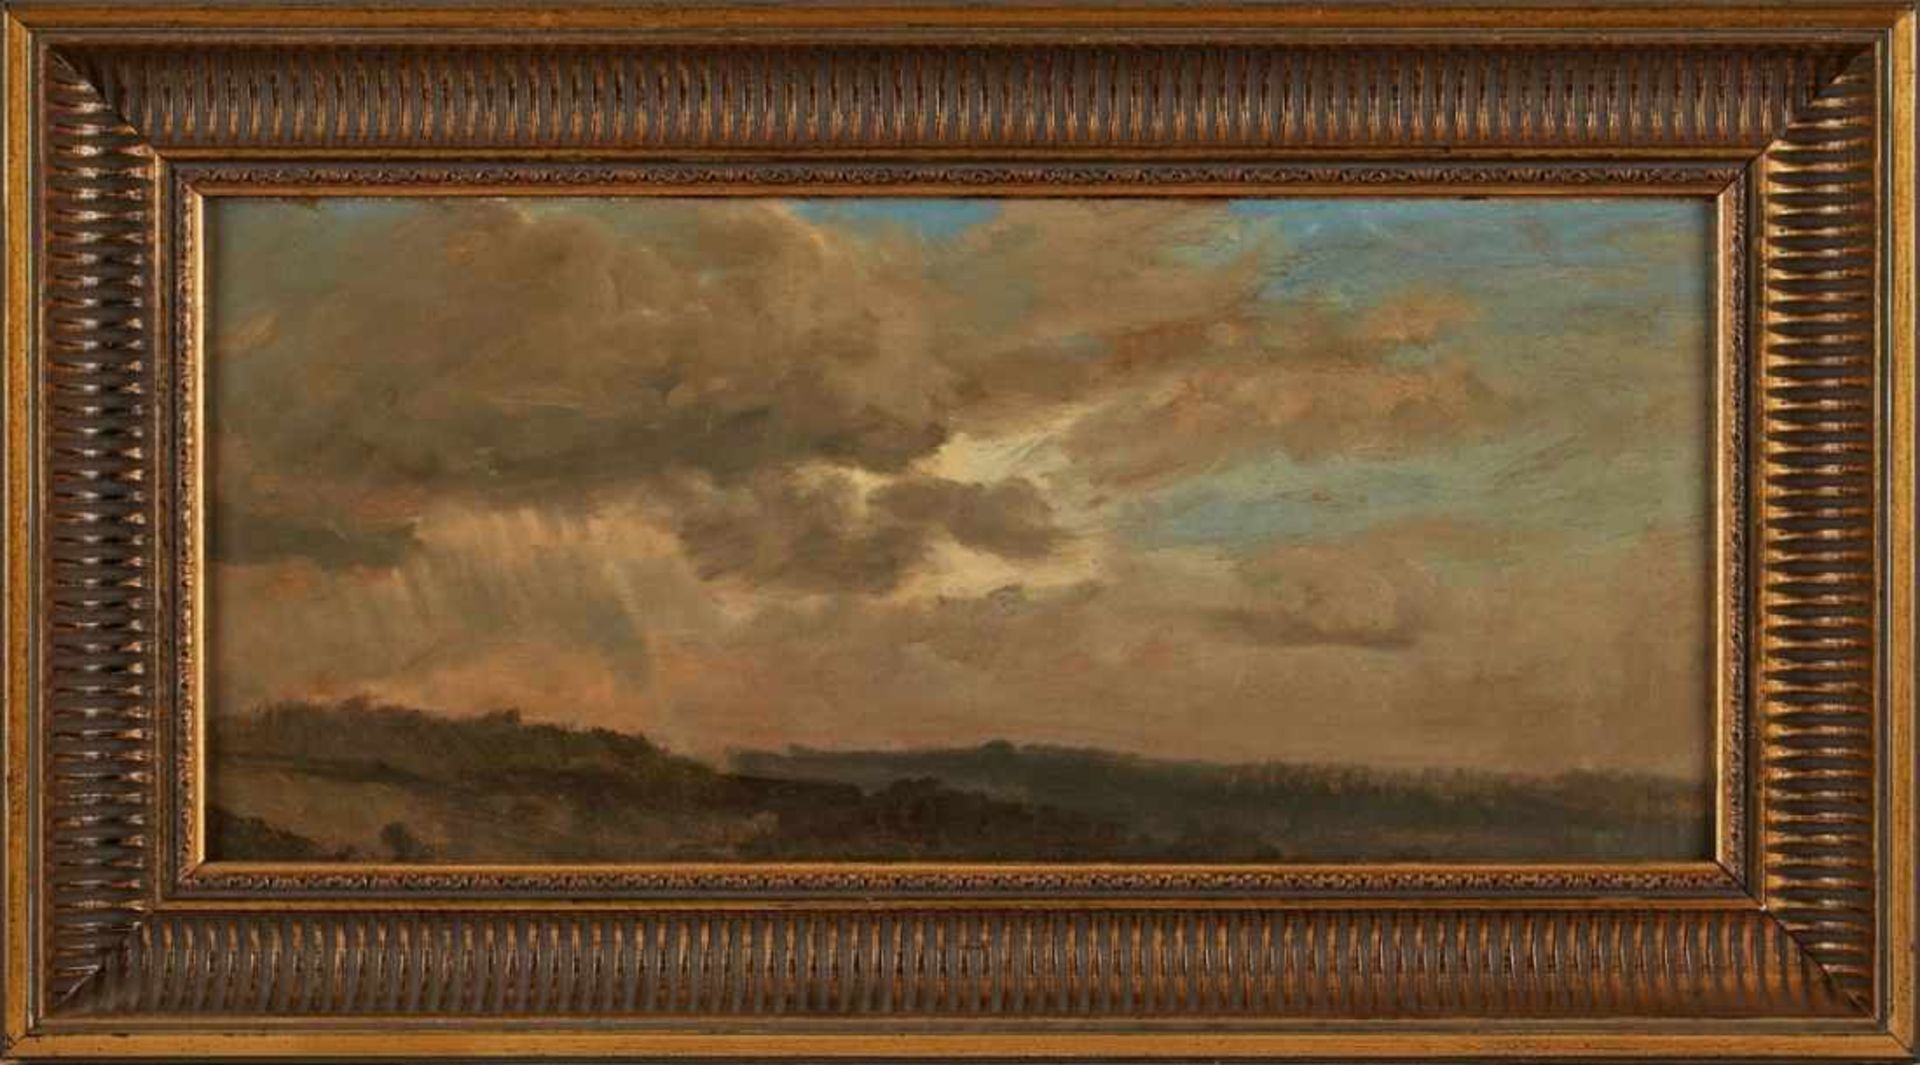 Gemälde Richard Fresenius 1844 Frankfurt - 1903 Monte Carlo "Regenwolken über weiter Landschaft"